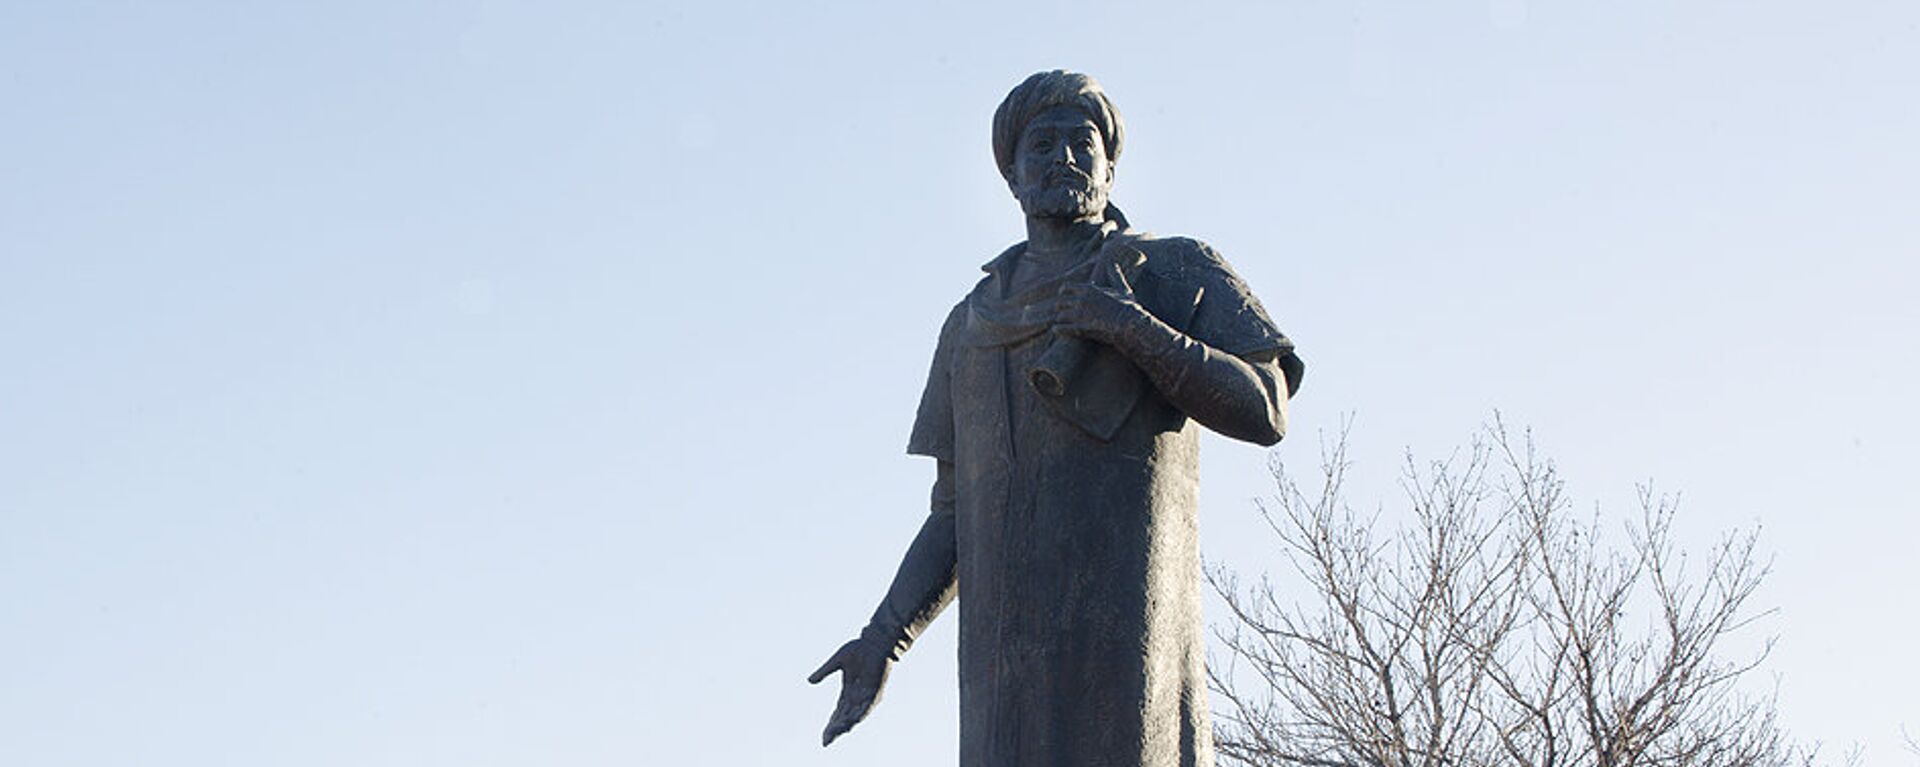 Памятник Алишеру Навои в Москве - Sputnik Узбекистан, 1920, 05.02.2021